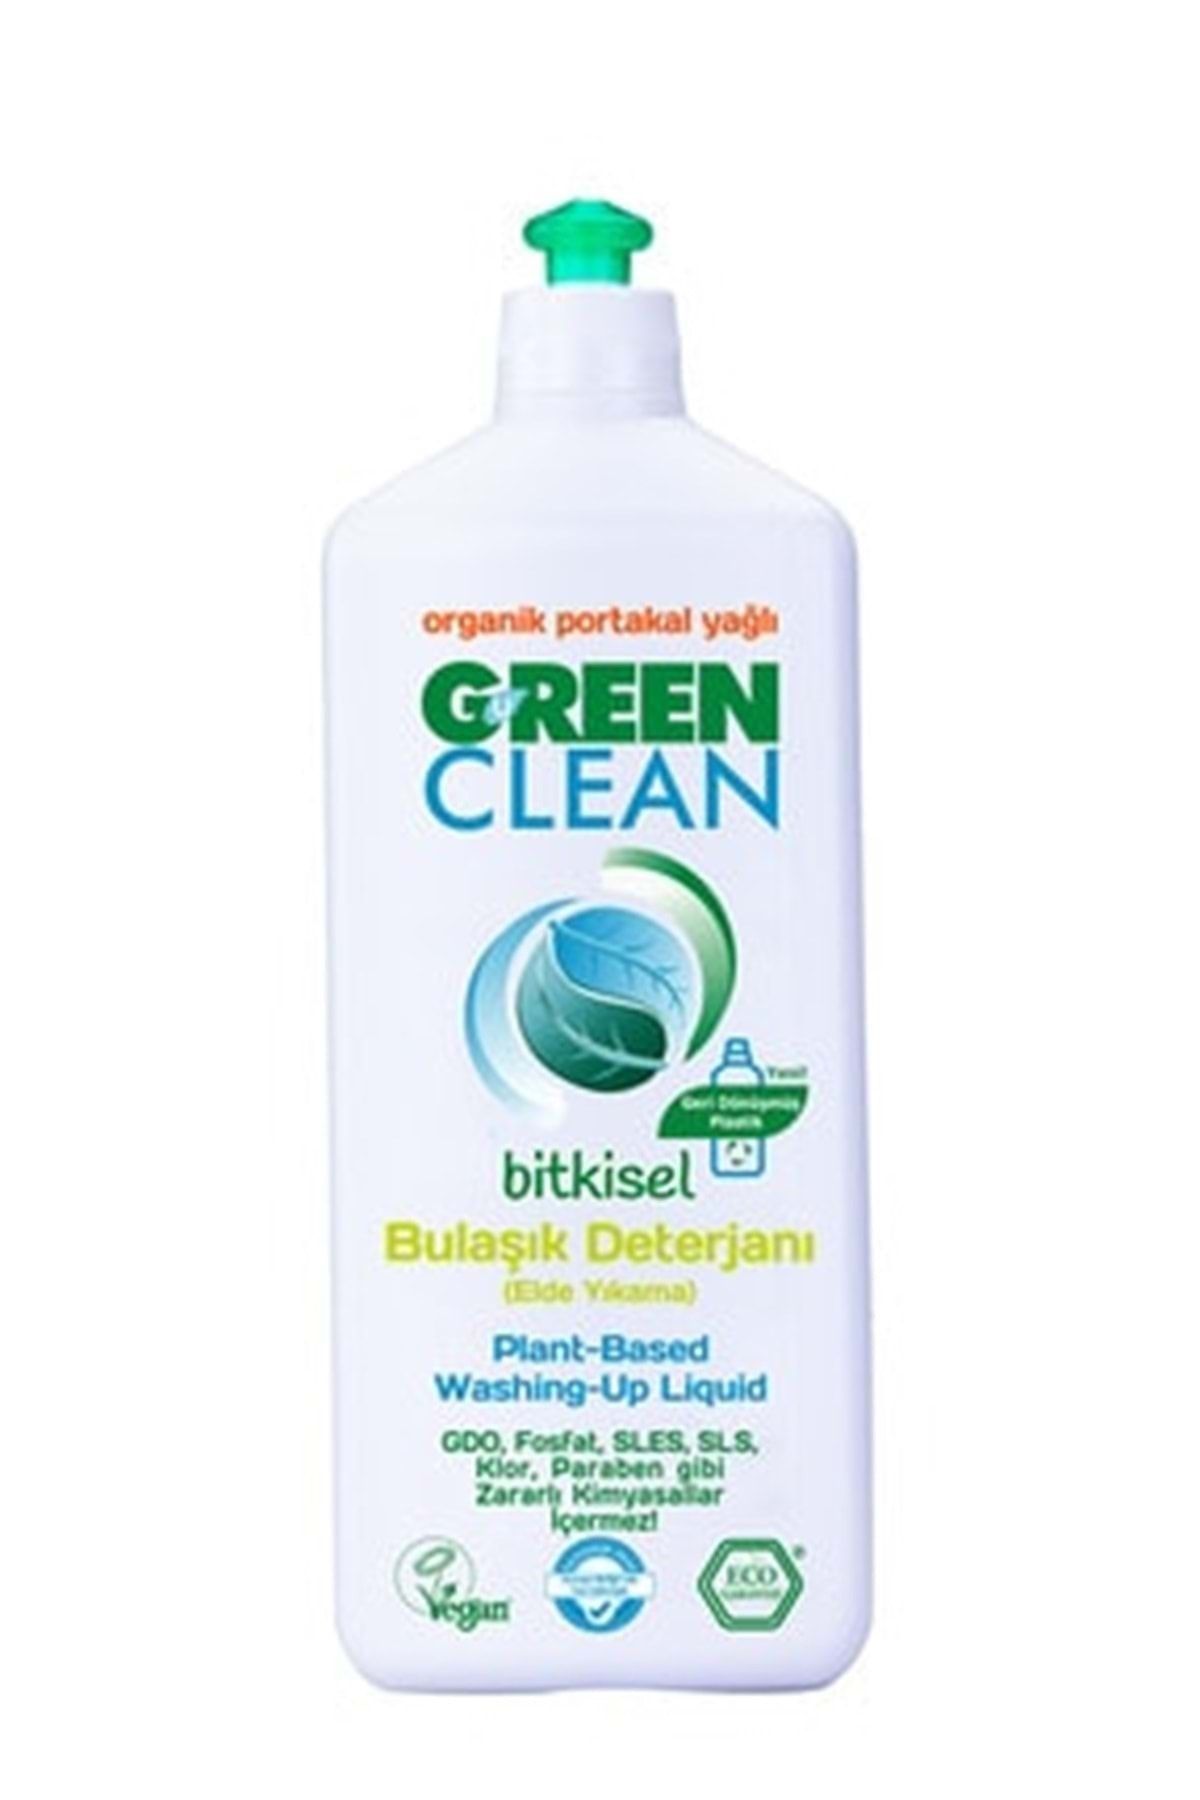 Green Clean Bitkisel Bulaşık Deterjanı Portakal 730 ml